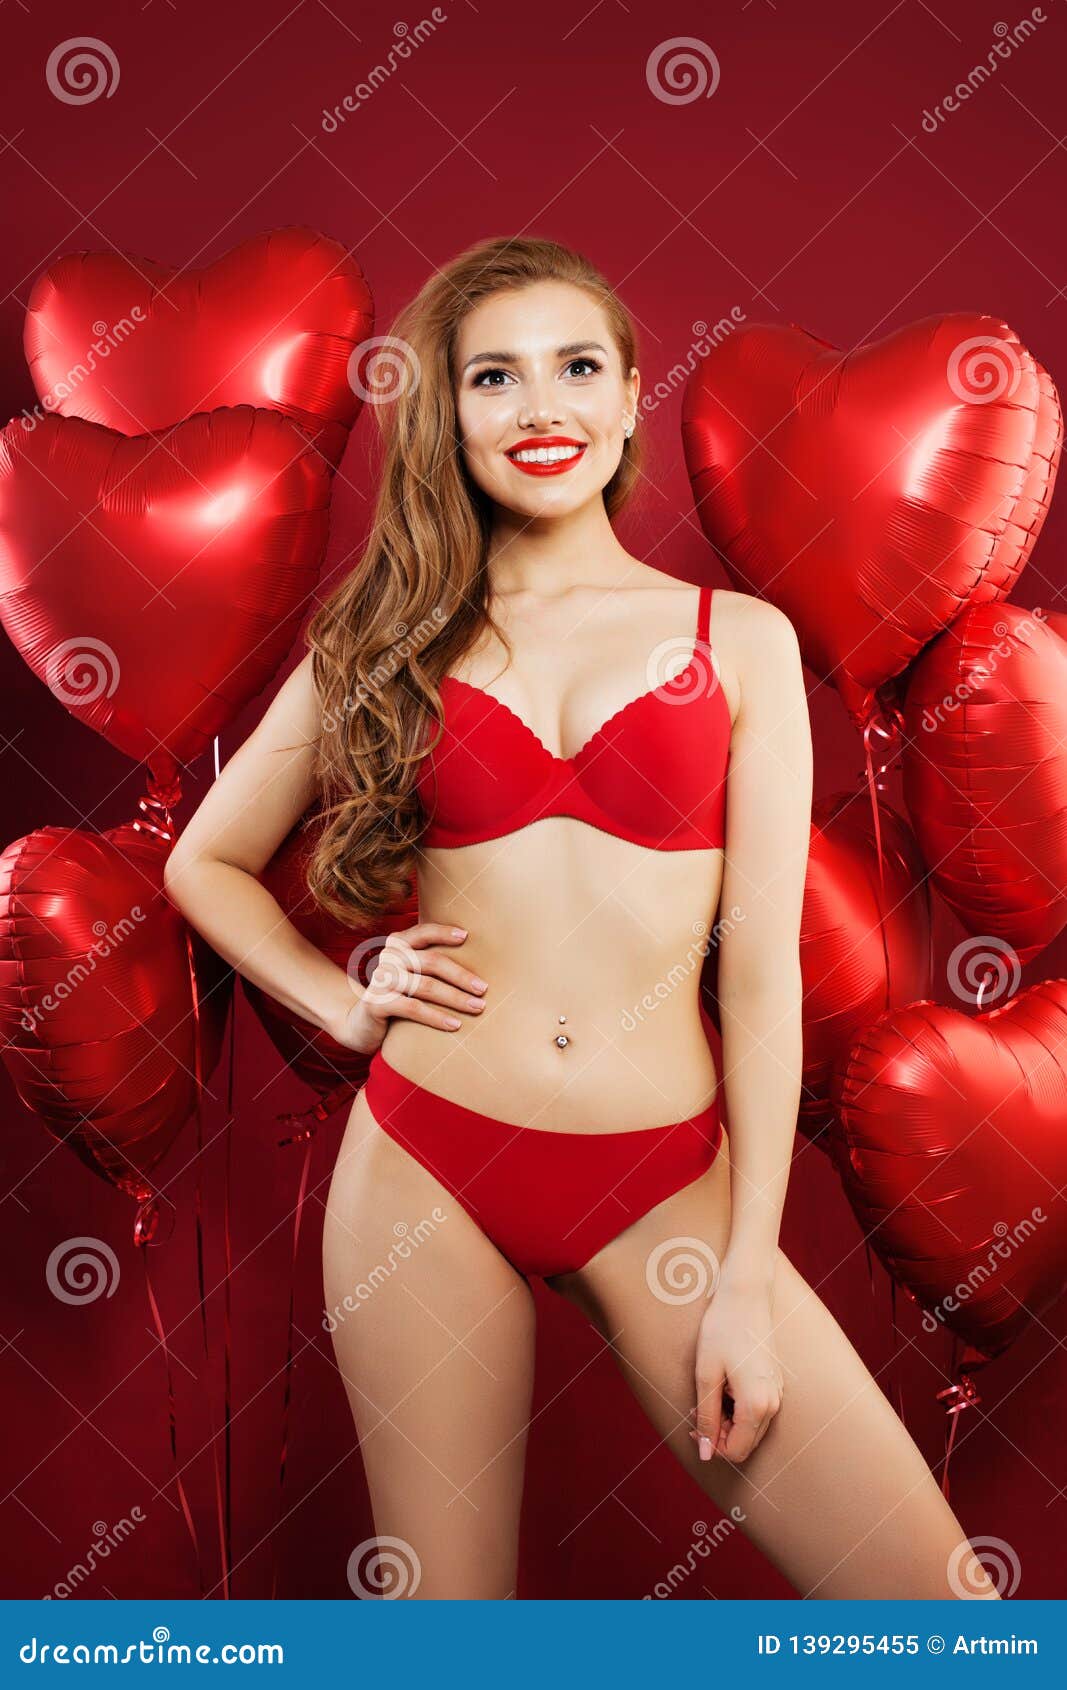 Mujer Atractiva En Ropa Interior En Fondo Rojo Del Corazón De Los Globos Rojos Sorpresa, Tarjetas Del Día De San Valentín Ge Imagen de archivo - Imagen de sano, underwear: 139295455